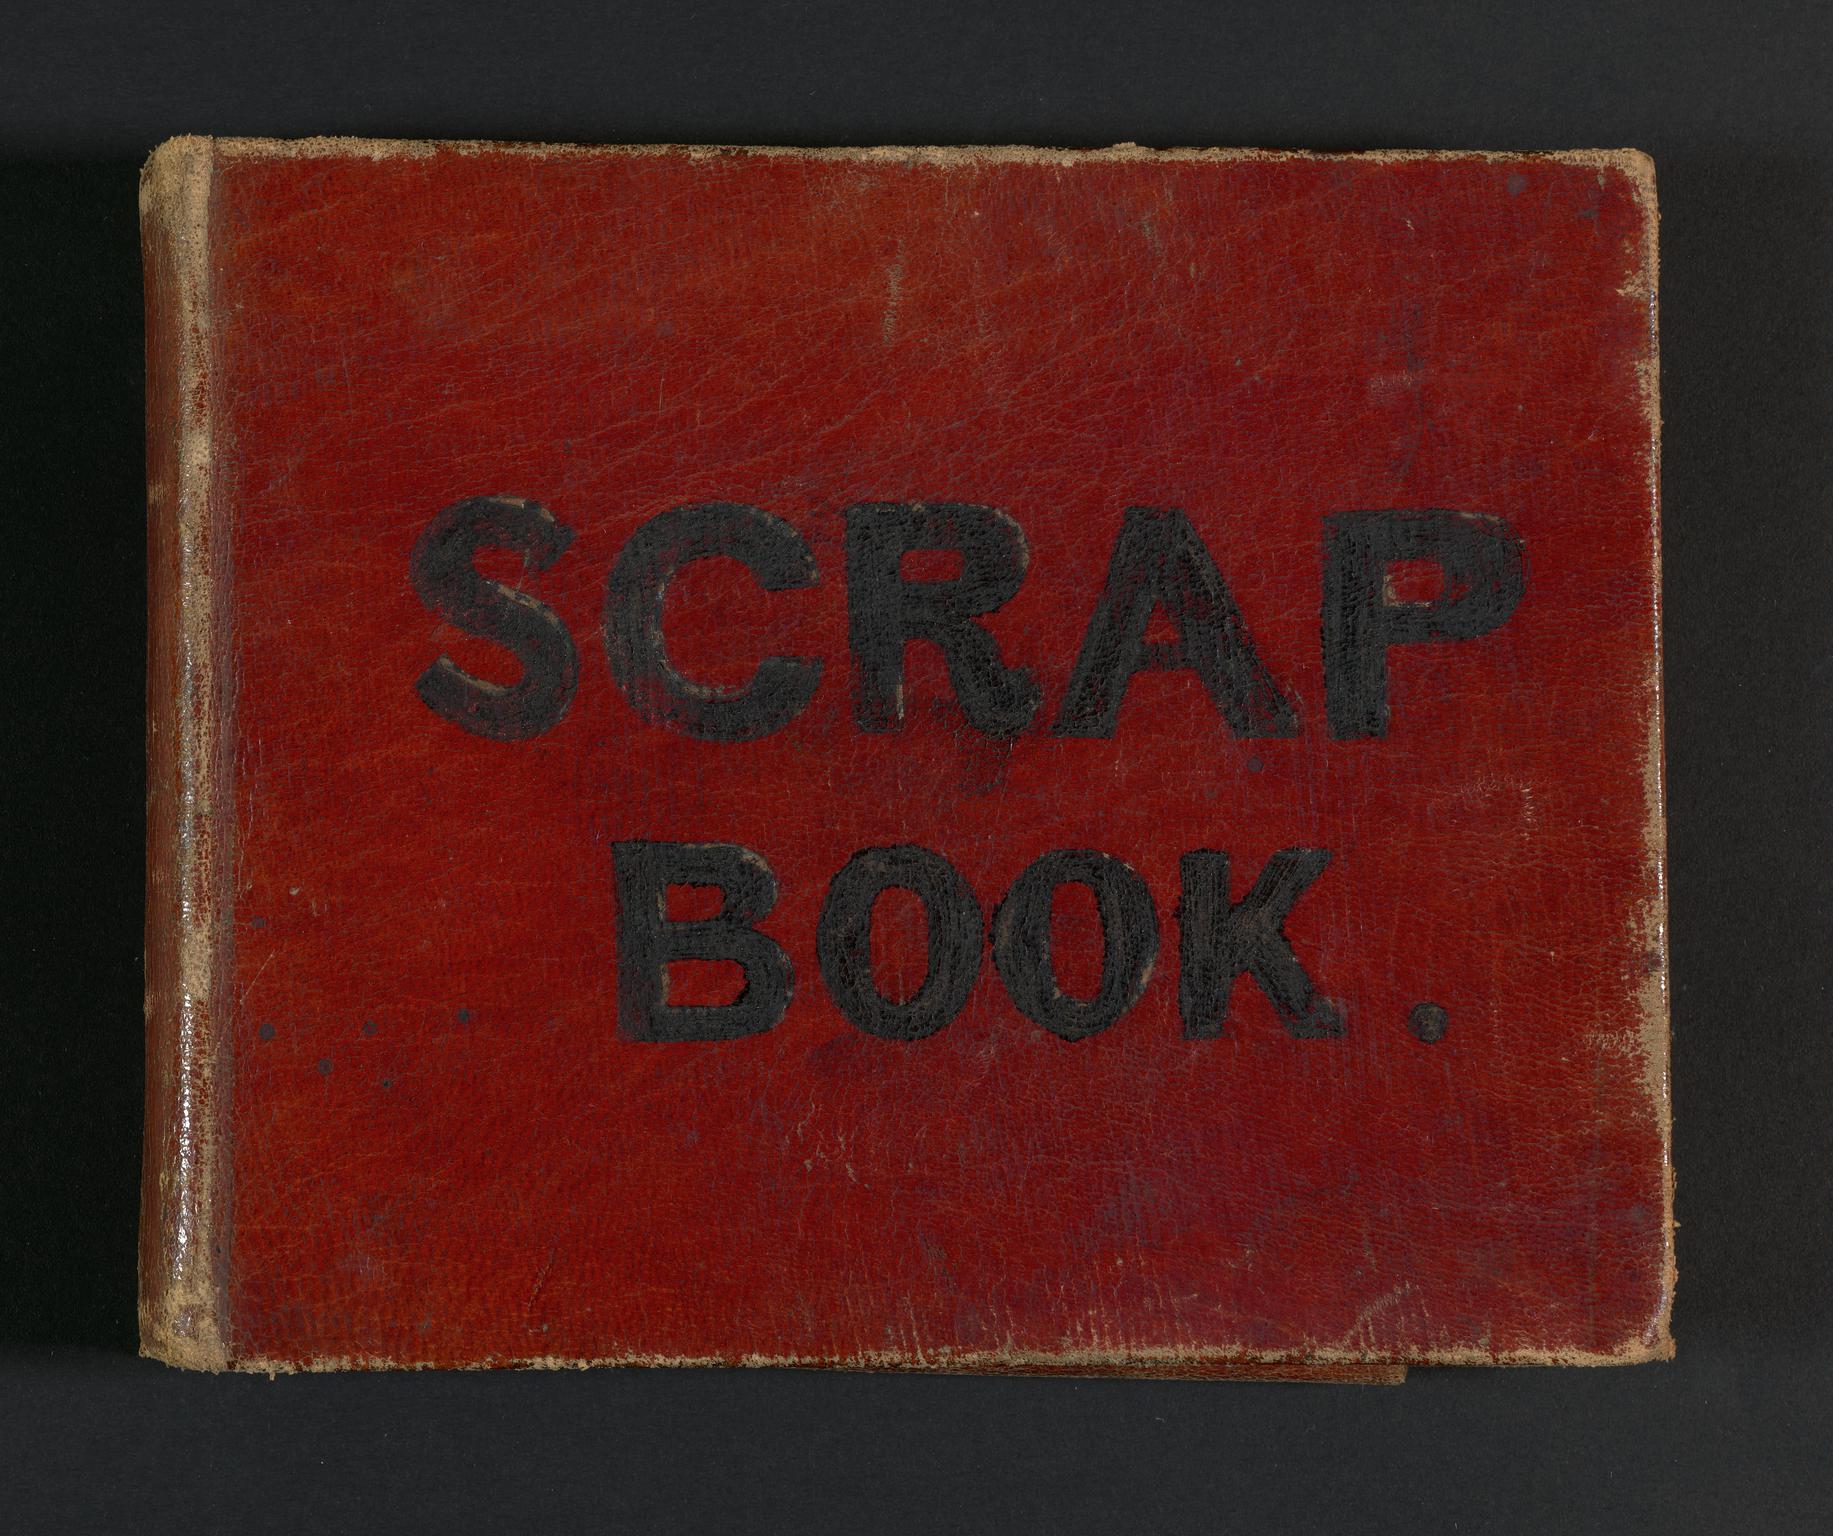 Sketchbook: Scrap Book, Rome, Paris, Naples